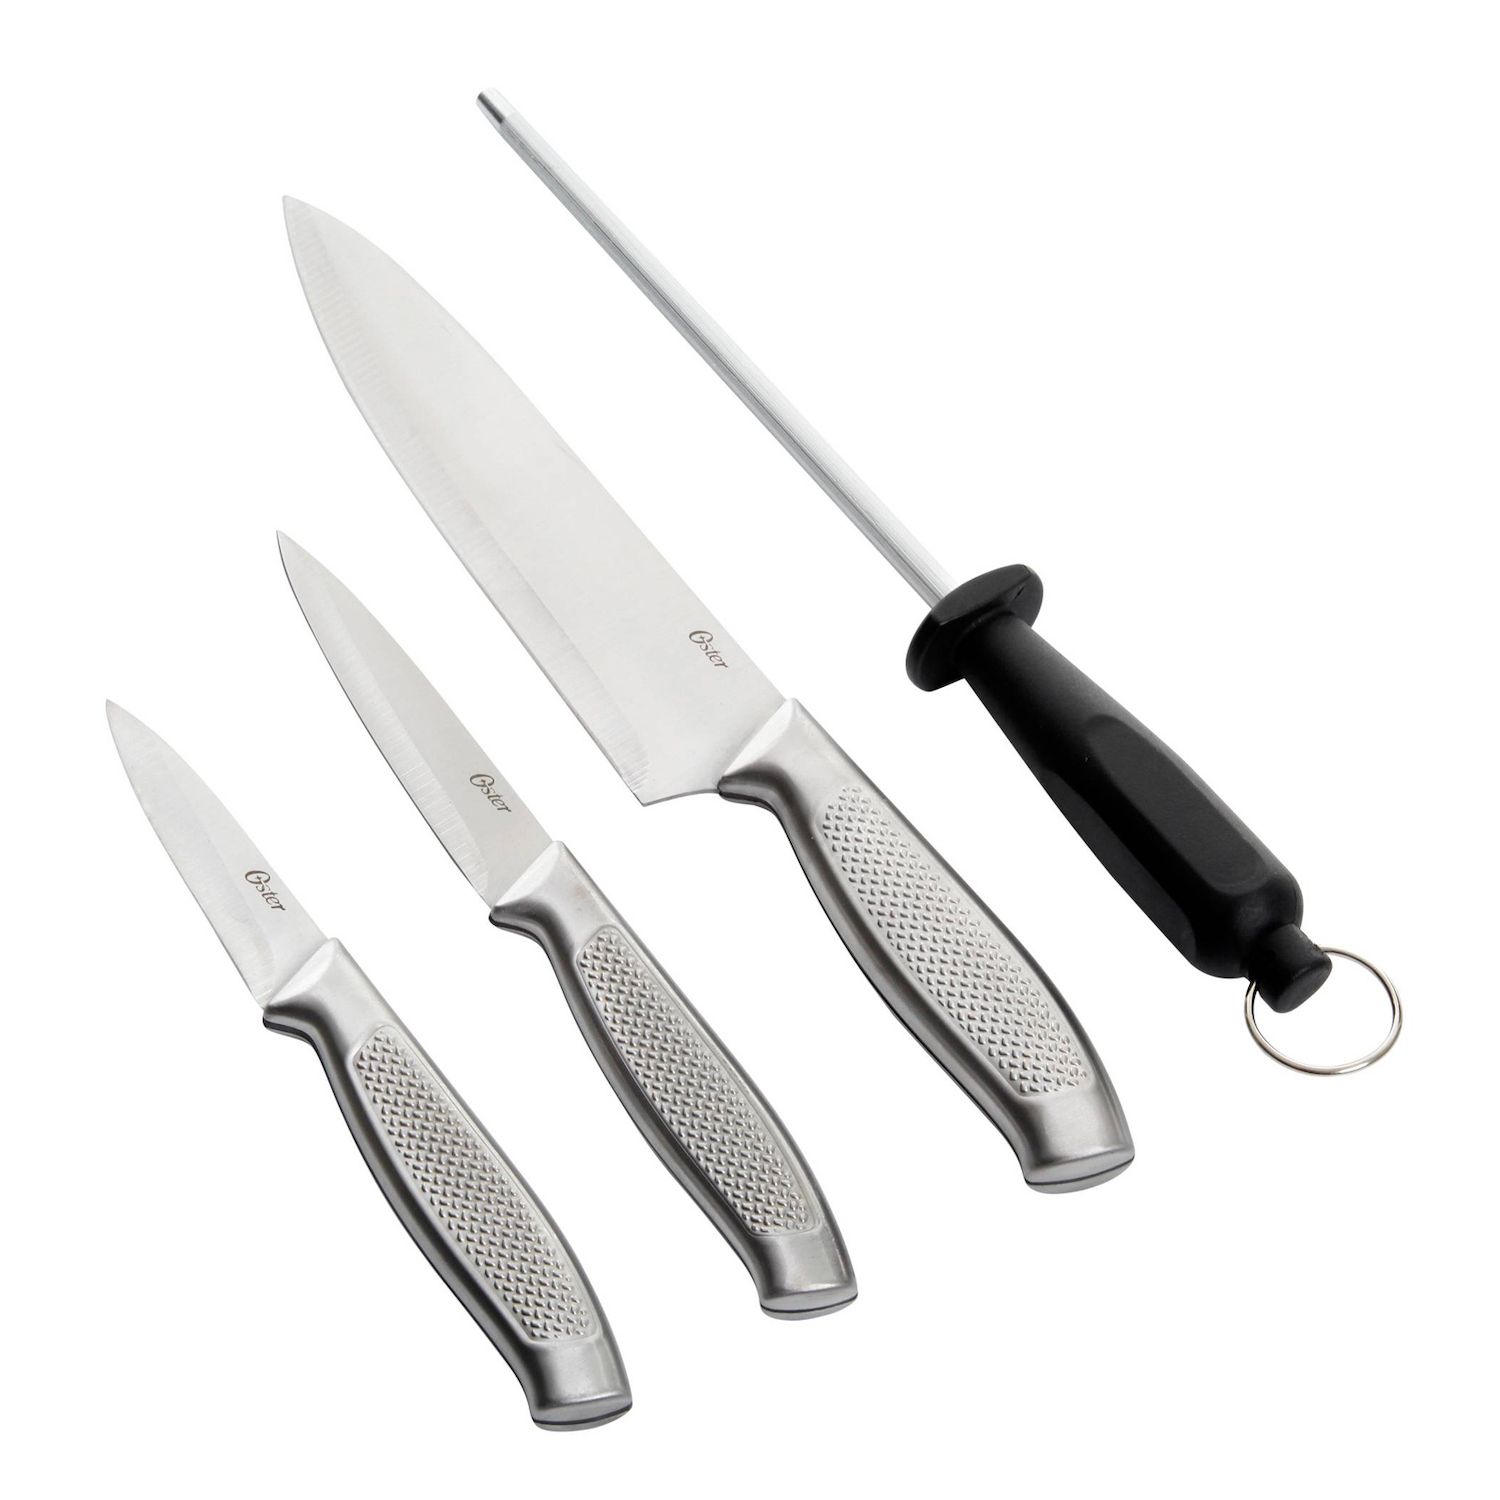 Knife Sets for sale in Vassar, Kansas